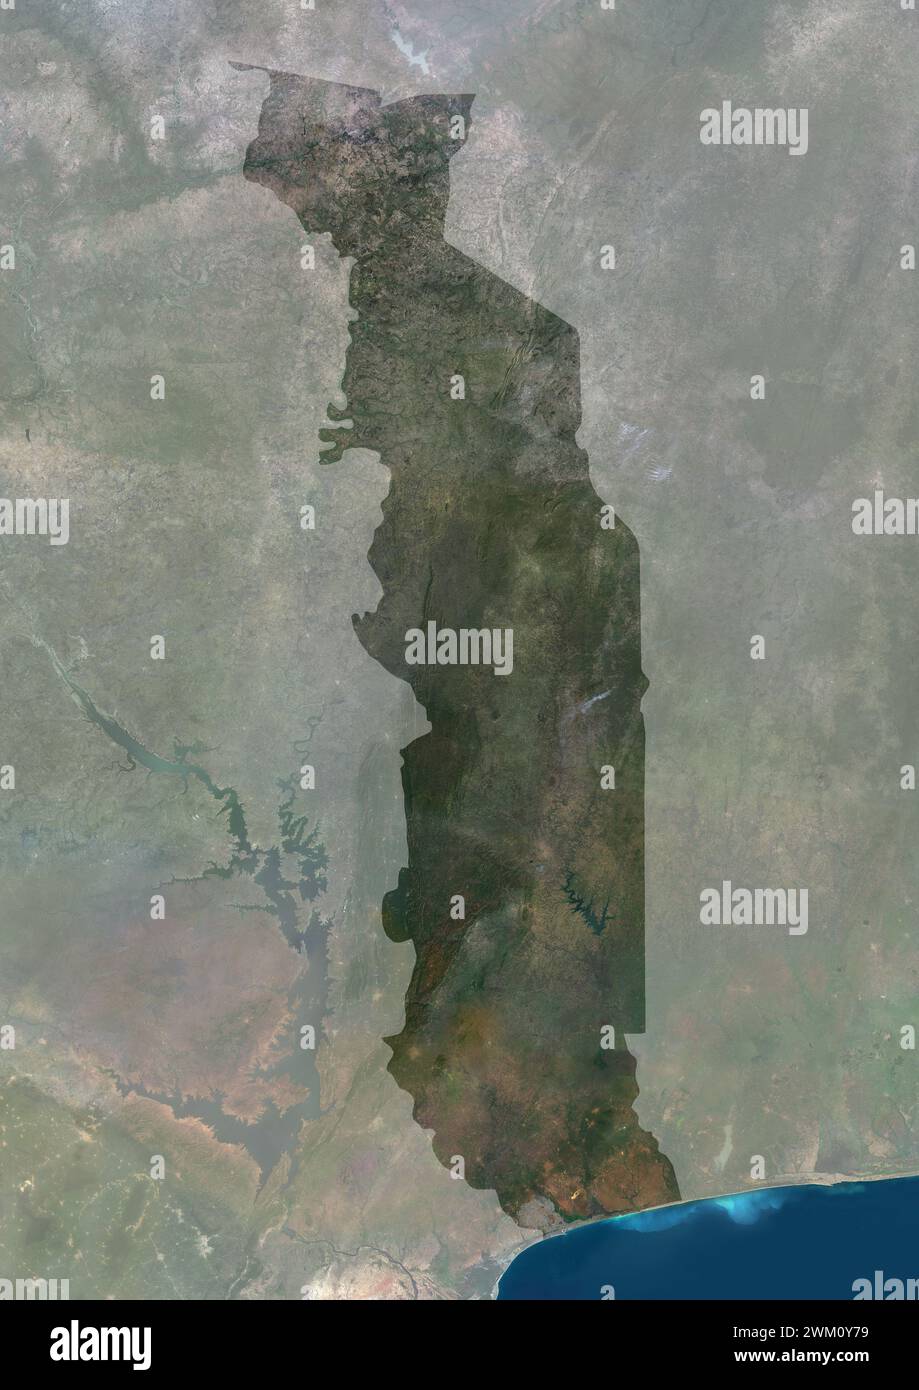 Immagine satellitare a colori del Togo, con maschera. Foto Stock